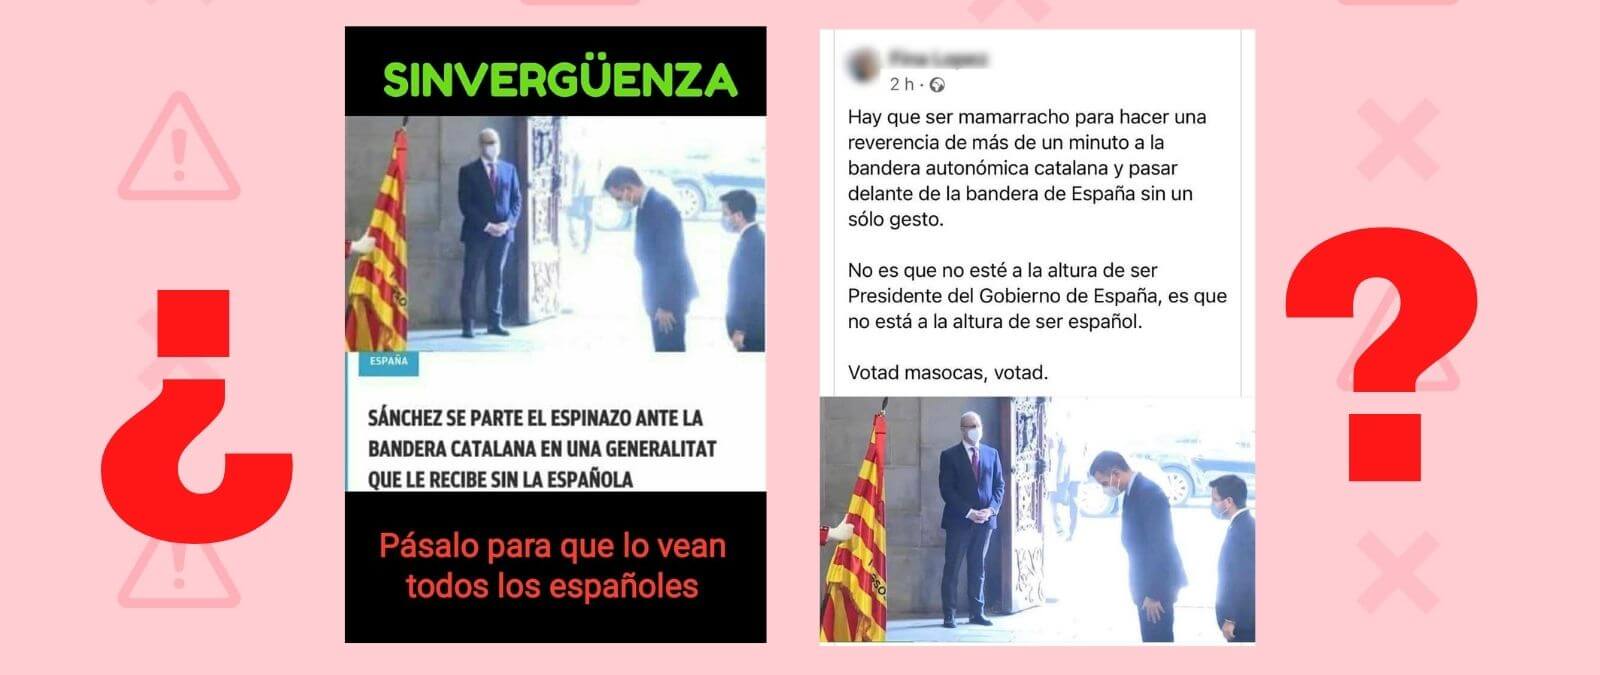 ¿Qué sabemos sobre el gesto de reverencia de Pedro Sánchez ante la bandera catalana en su recibimiento en la Generalitat? No era la Senyera sino la bandera de los Mossos d’Esquadra